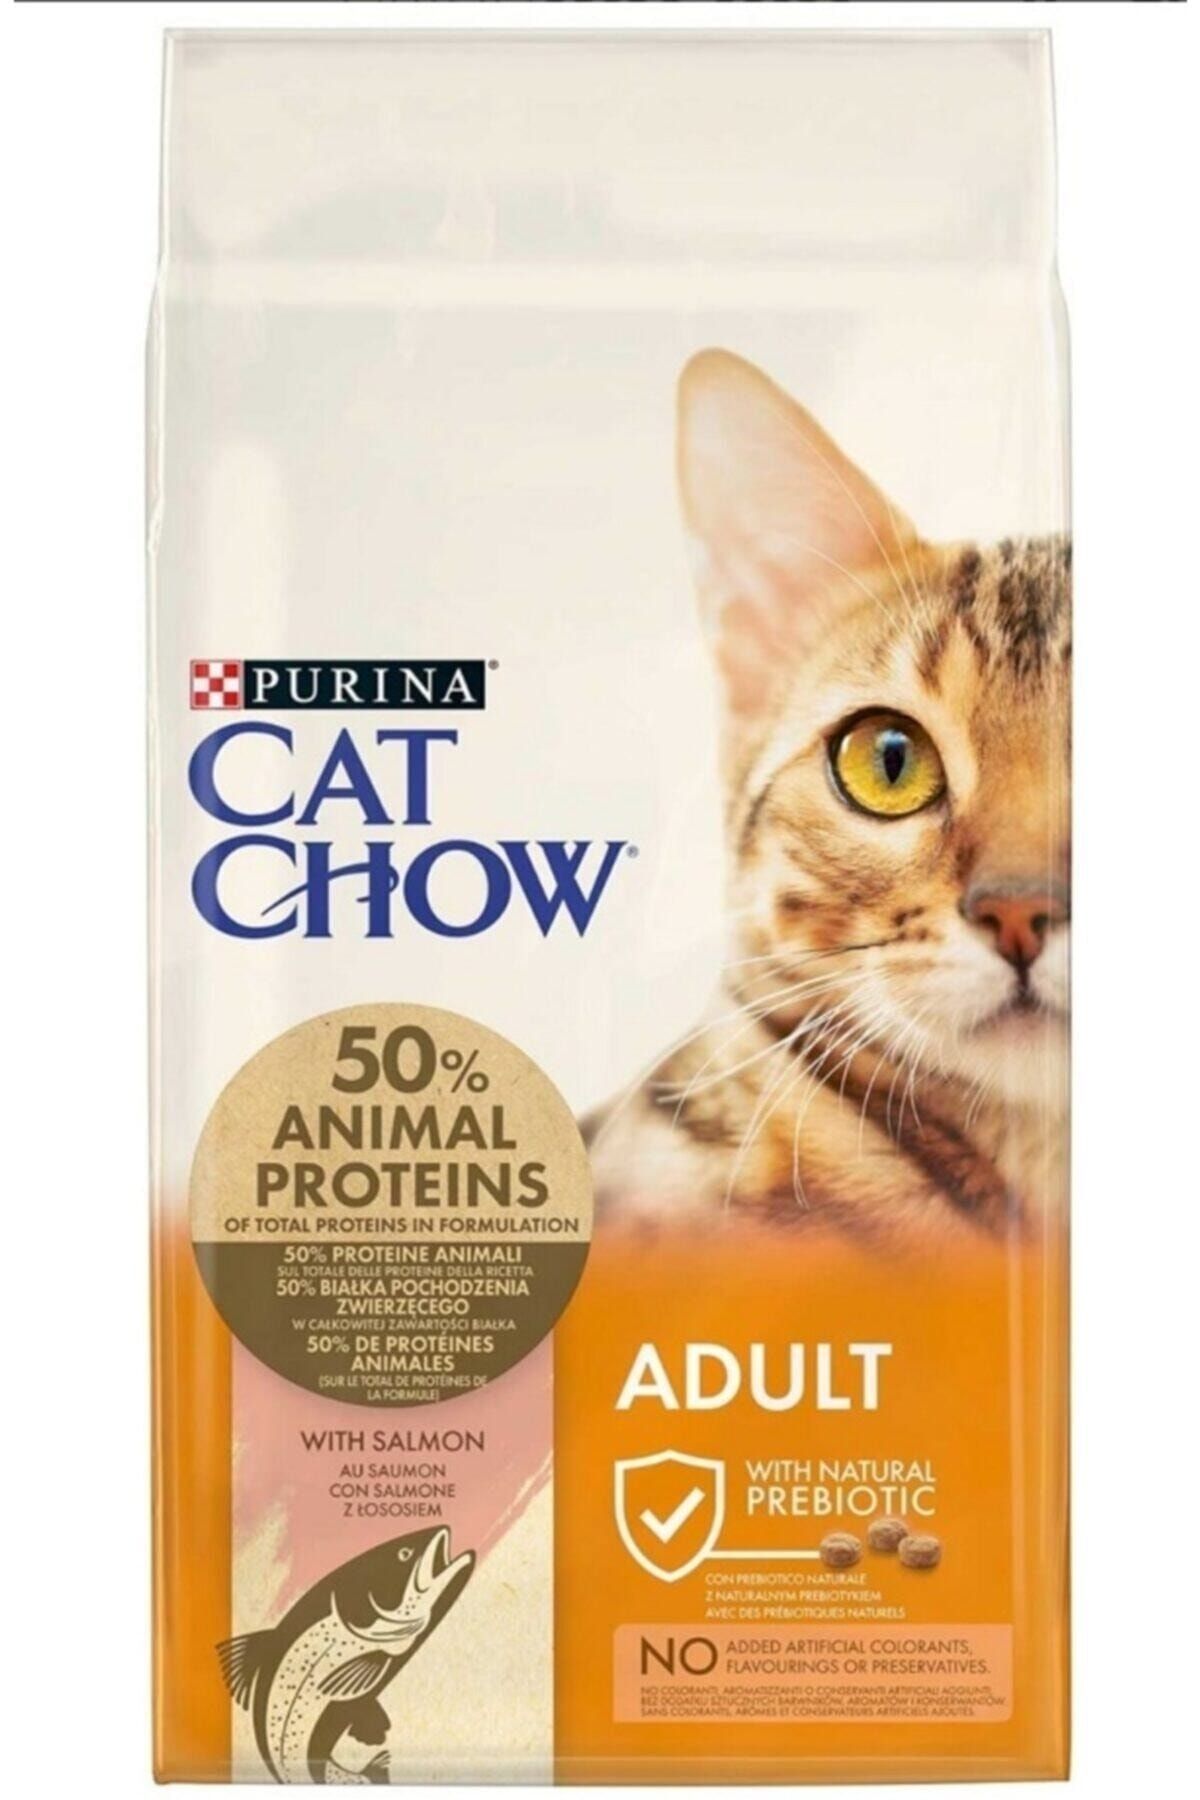 Cat Chow Purına (ADULT) - Somon Balıklı Yetişkin Kuru Kedi Maması 15 Kg